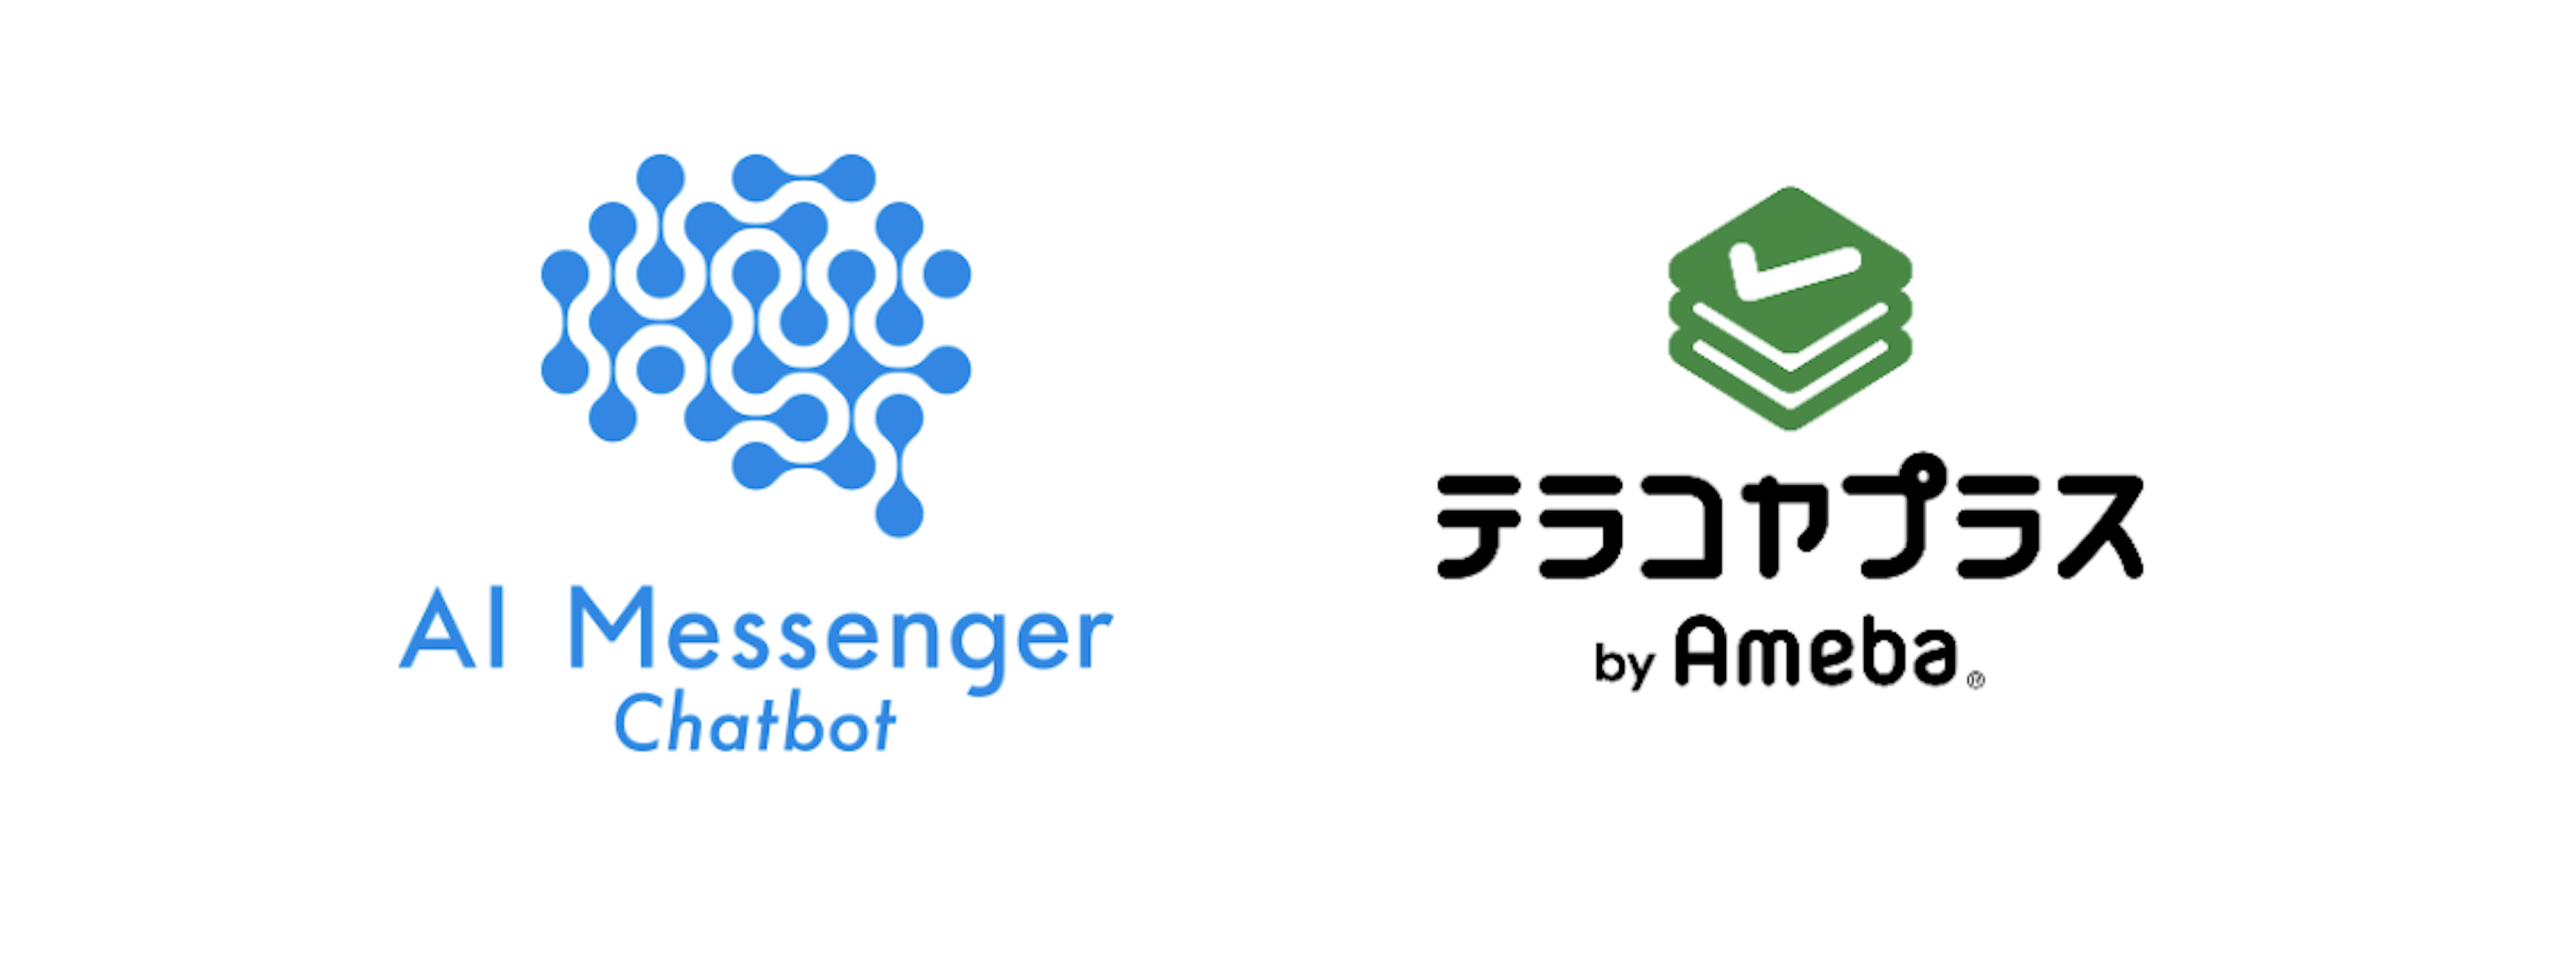 AIチャットボット「AI Messenger Chatbot」、スムーズな問い合わせ対応を目的に、テラコヤプラスby Ameba（株式会社CyberOwl）に導入